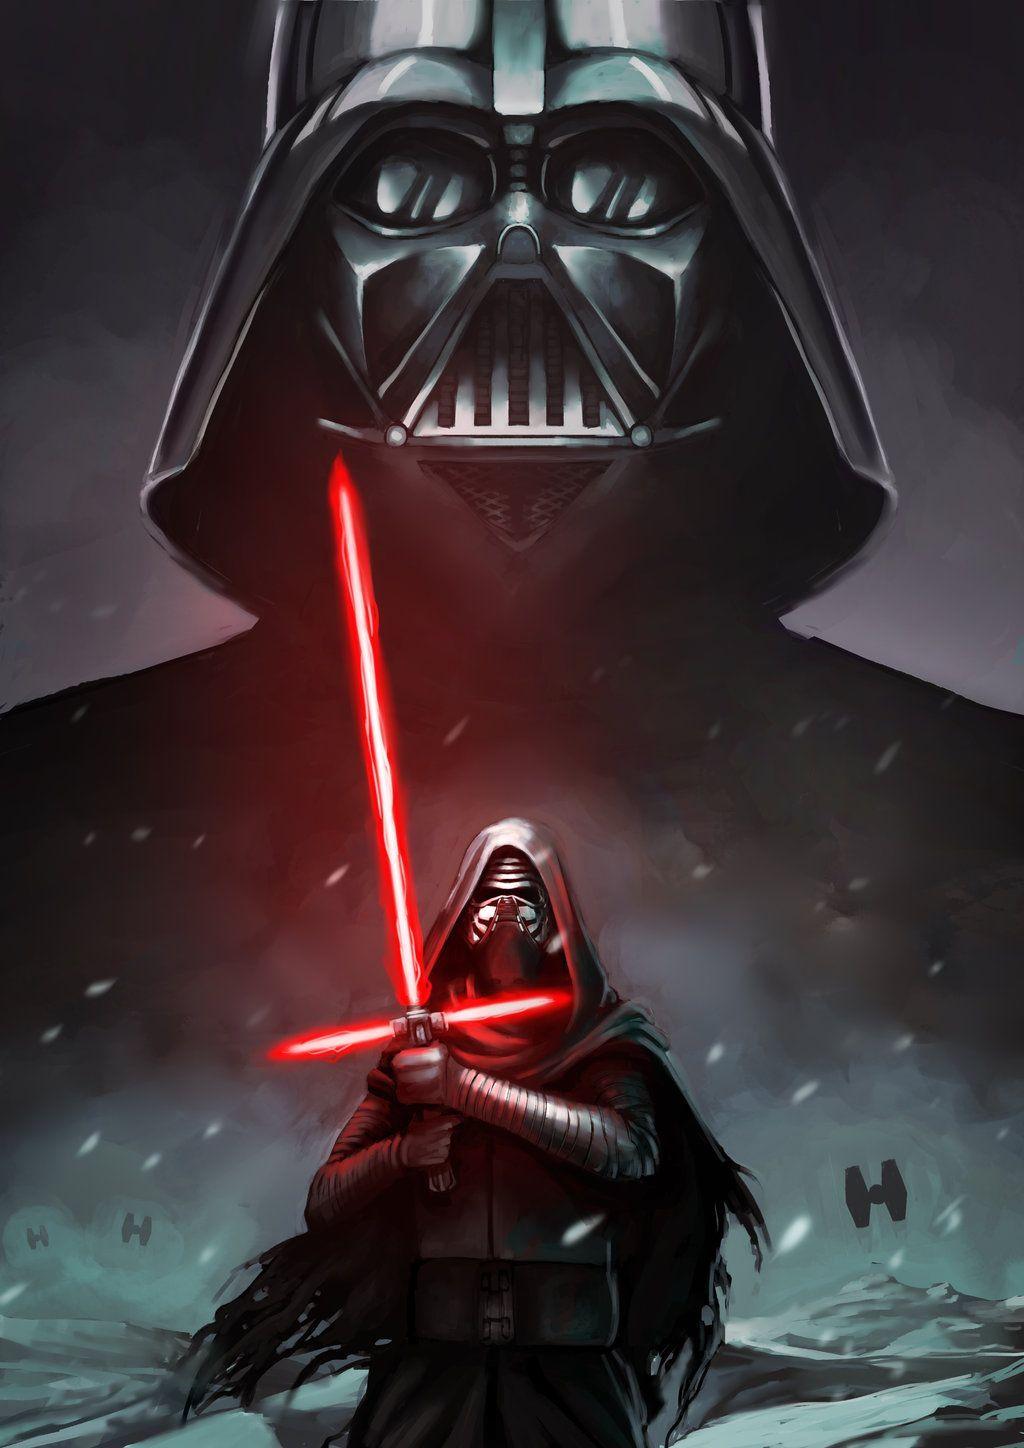 Darth Vader And Kylo Ren By Alex Donovan. Star Wars, Episode VII